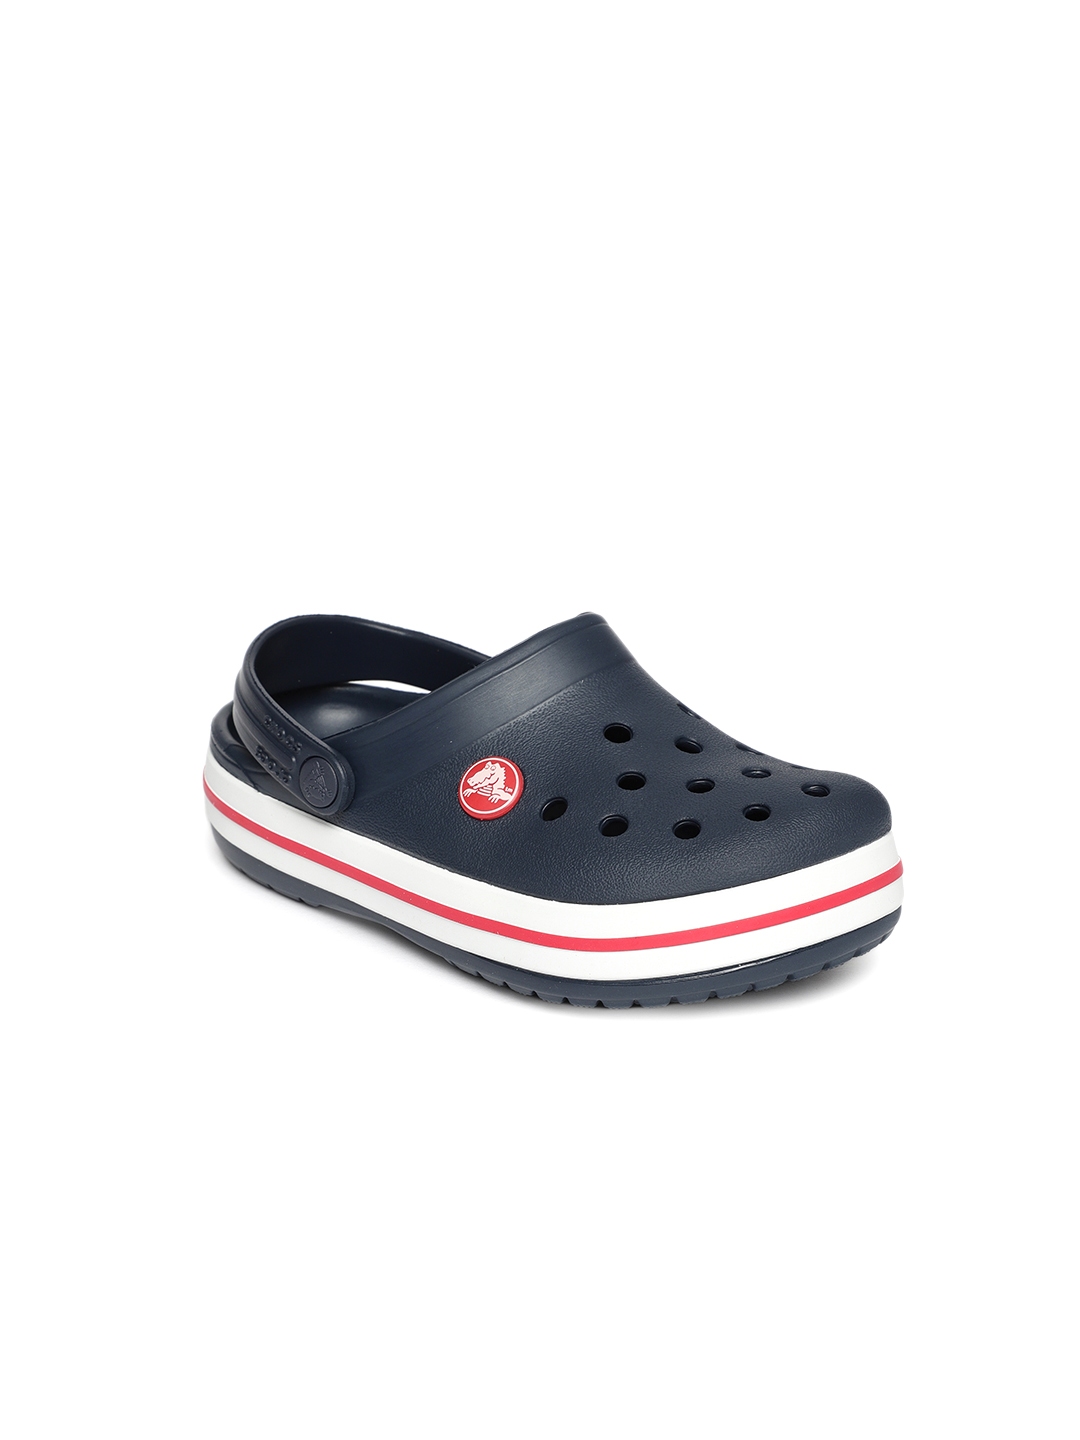 Buy Crocs Kids Navy Blue Solid Clogs - Flip Flops for Unisex Kids ...